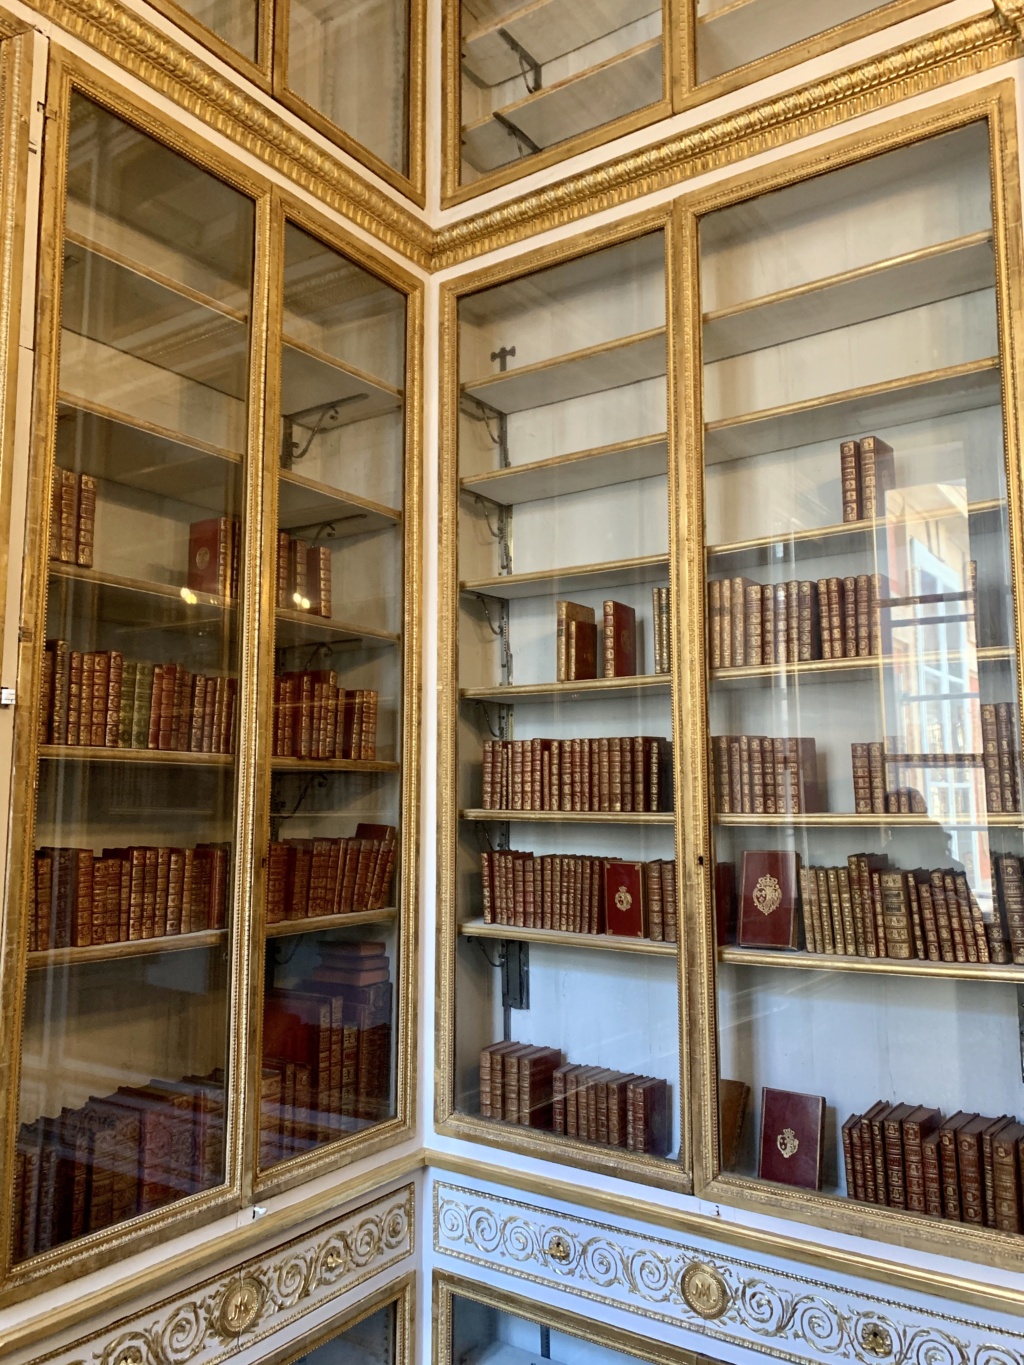 Bibliothèque - La bibliothèque de la reine au château de Versailles 9e2deb10